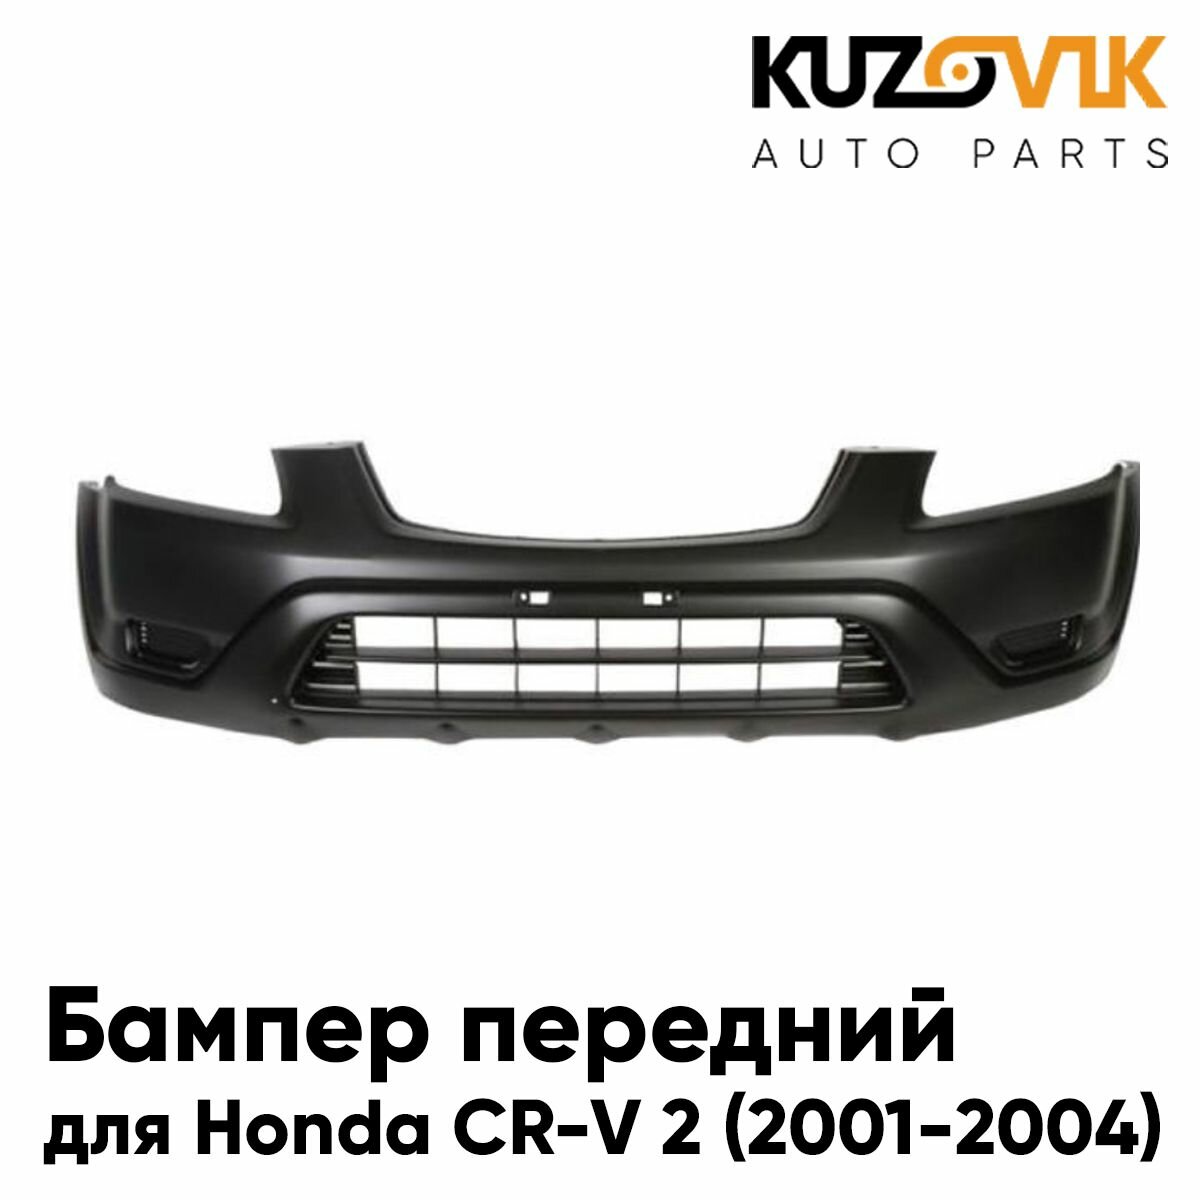 Бампер передний без отверстий под омыватель Honda CR-V 2 (2002-)